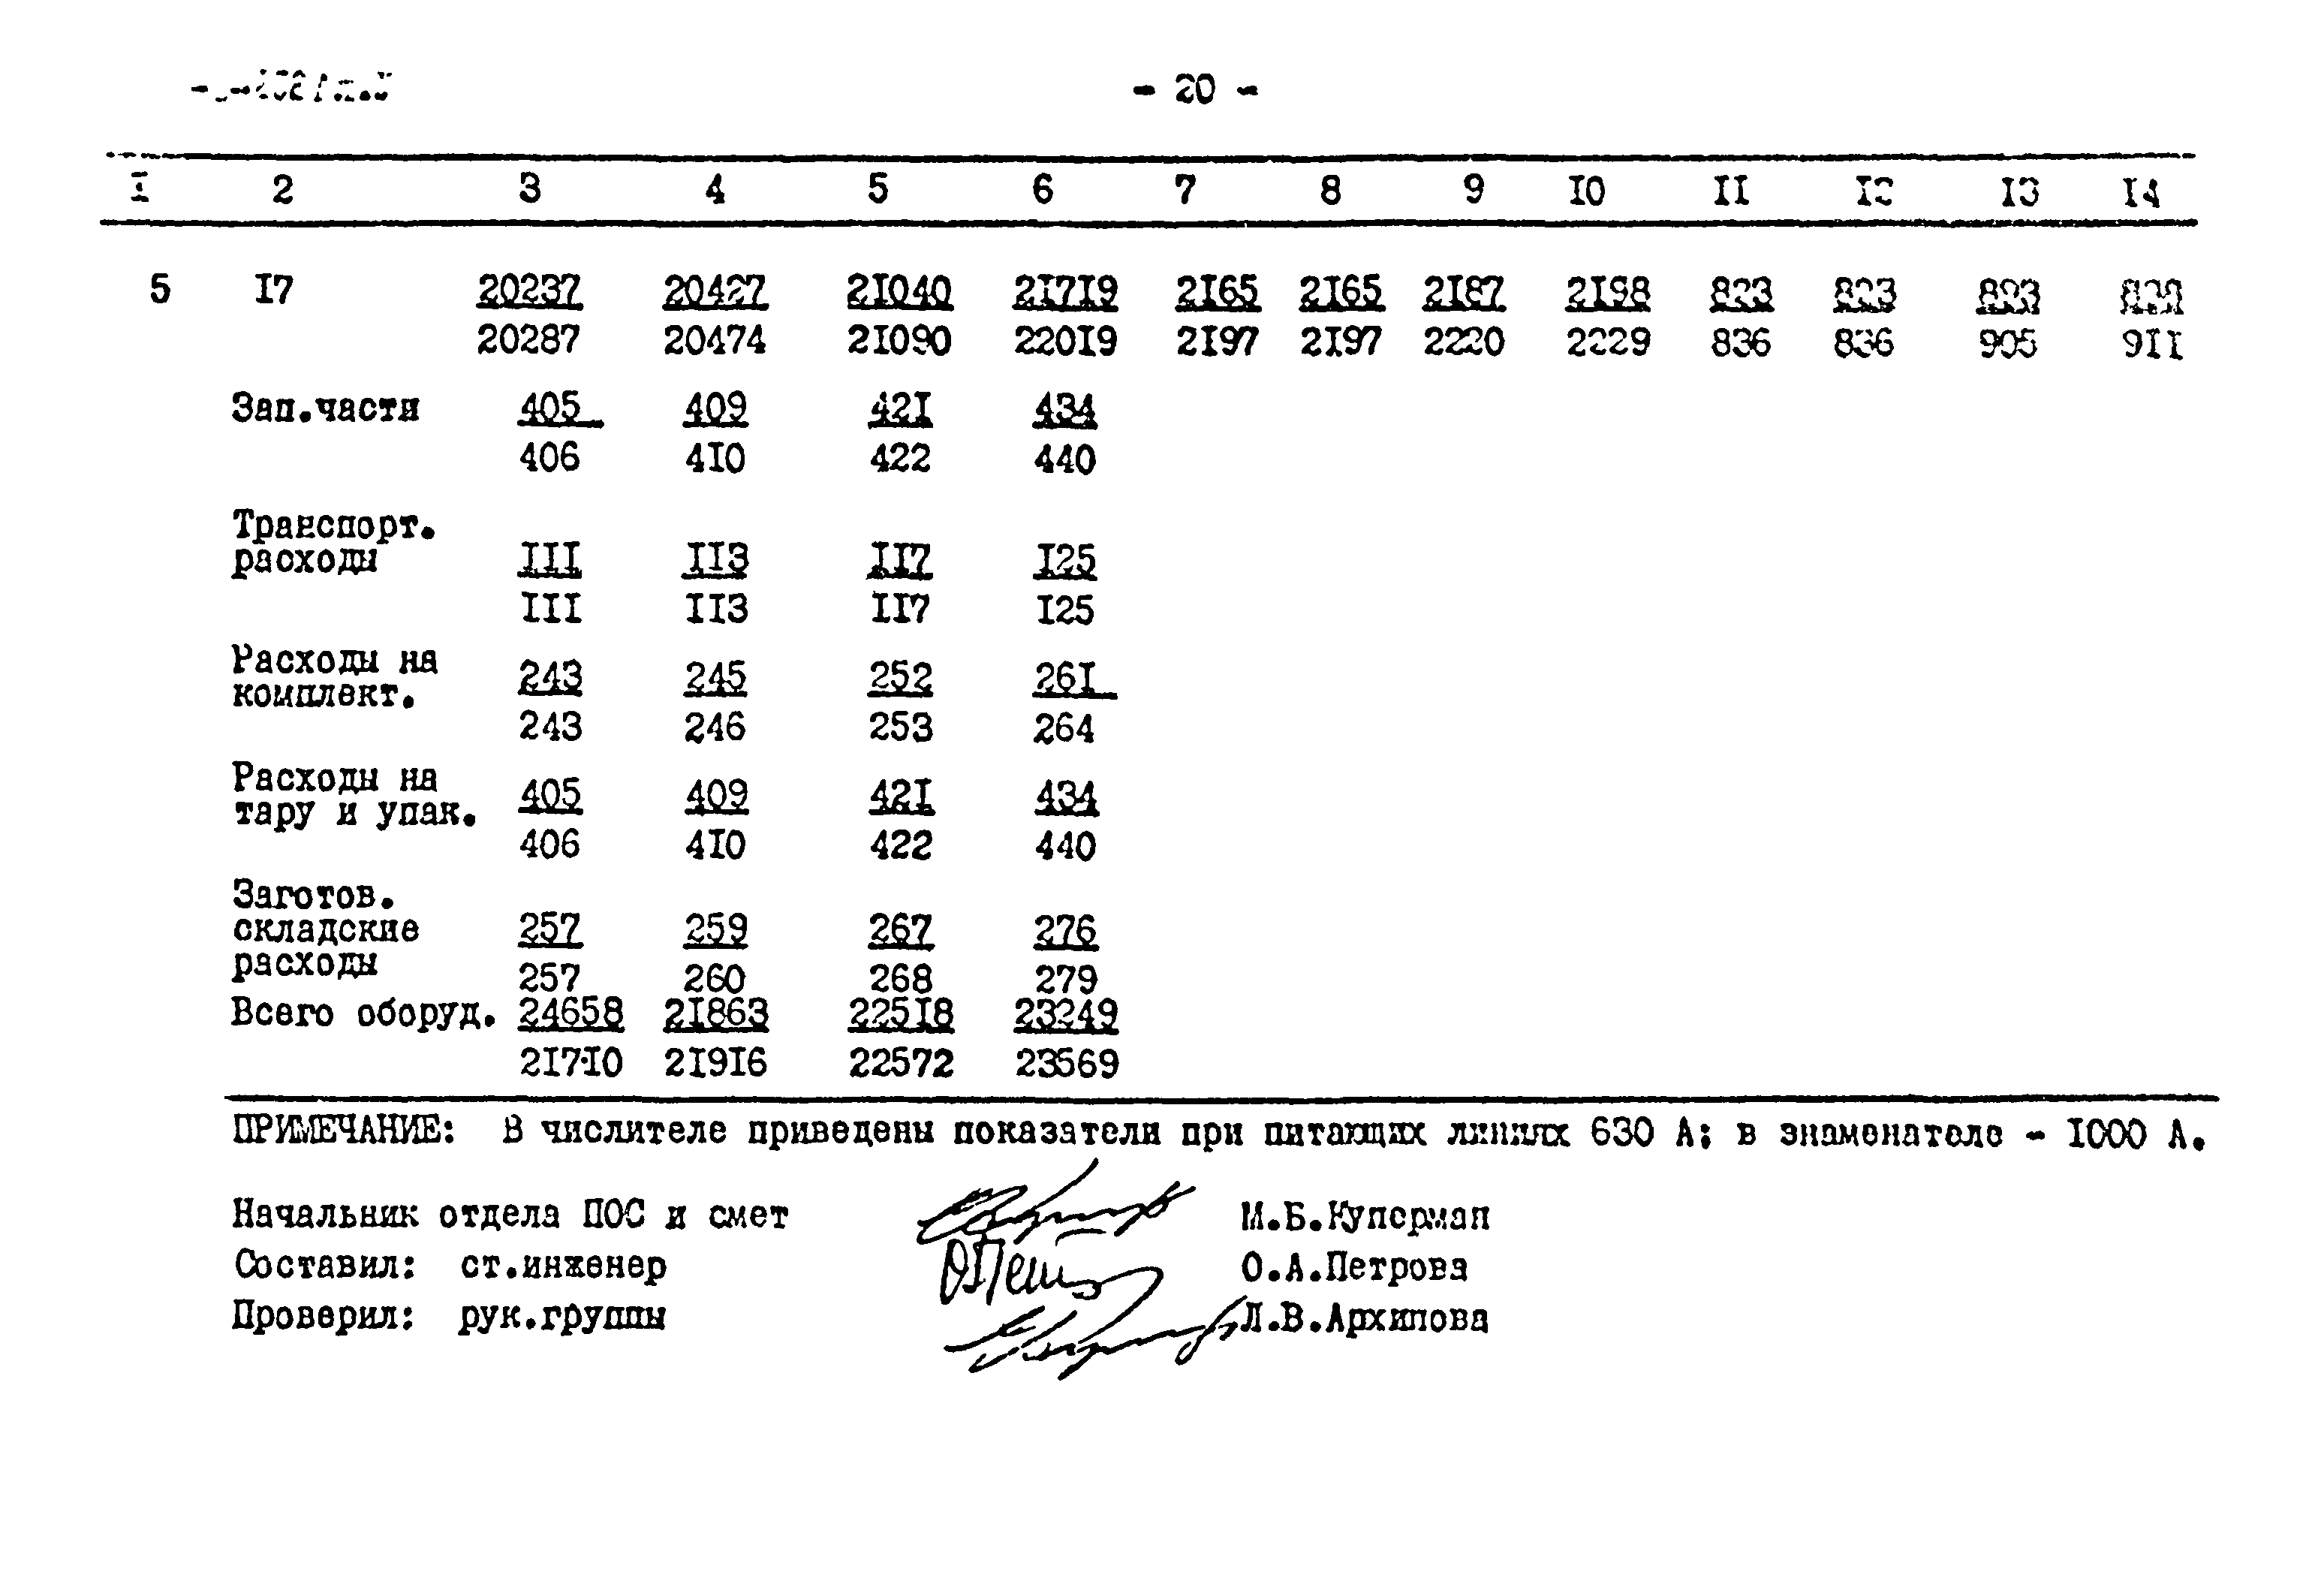 Типовой проект 407-3-252